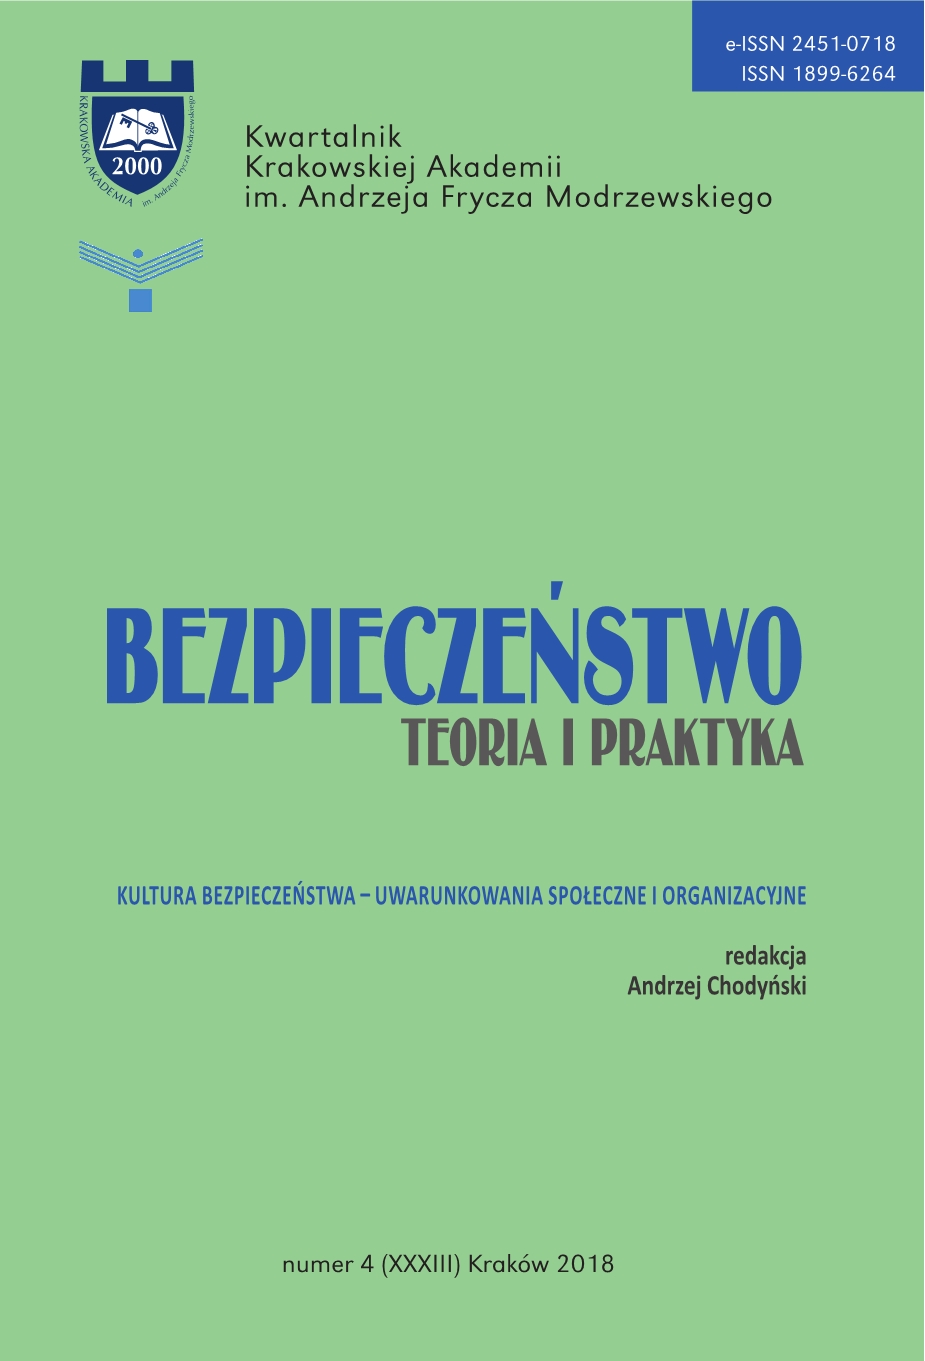 Adam Jabłoński, Marek Jabłoński, Mechanizmy efektywnego zarządzania bezpieczeństwem w transporcie kolejowym - book review Cover Image